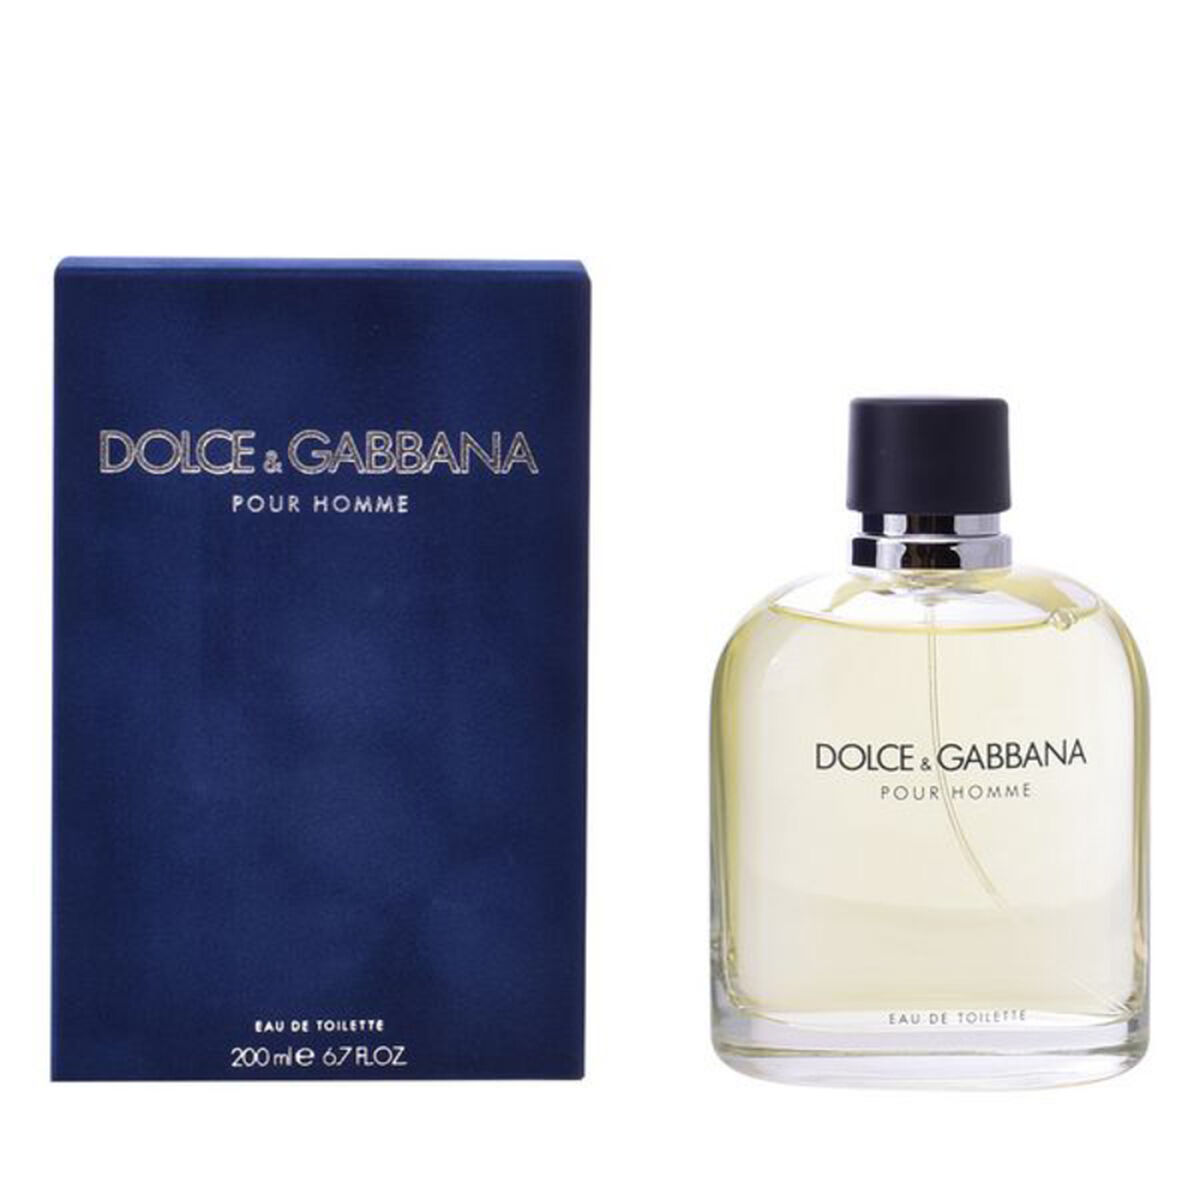 Osta tuote Miesten parfyymi Dolce & Gabbana EDT verkkokaupastamme Korhone: Parfyymit & Kosmetiikka 10% alennuksella koodilla KORHONE